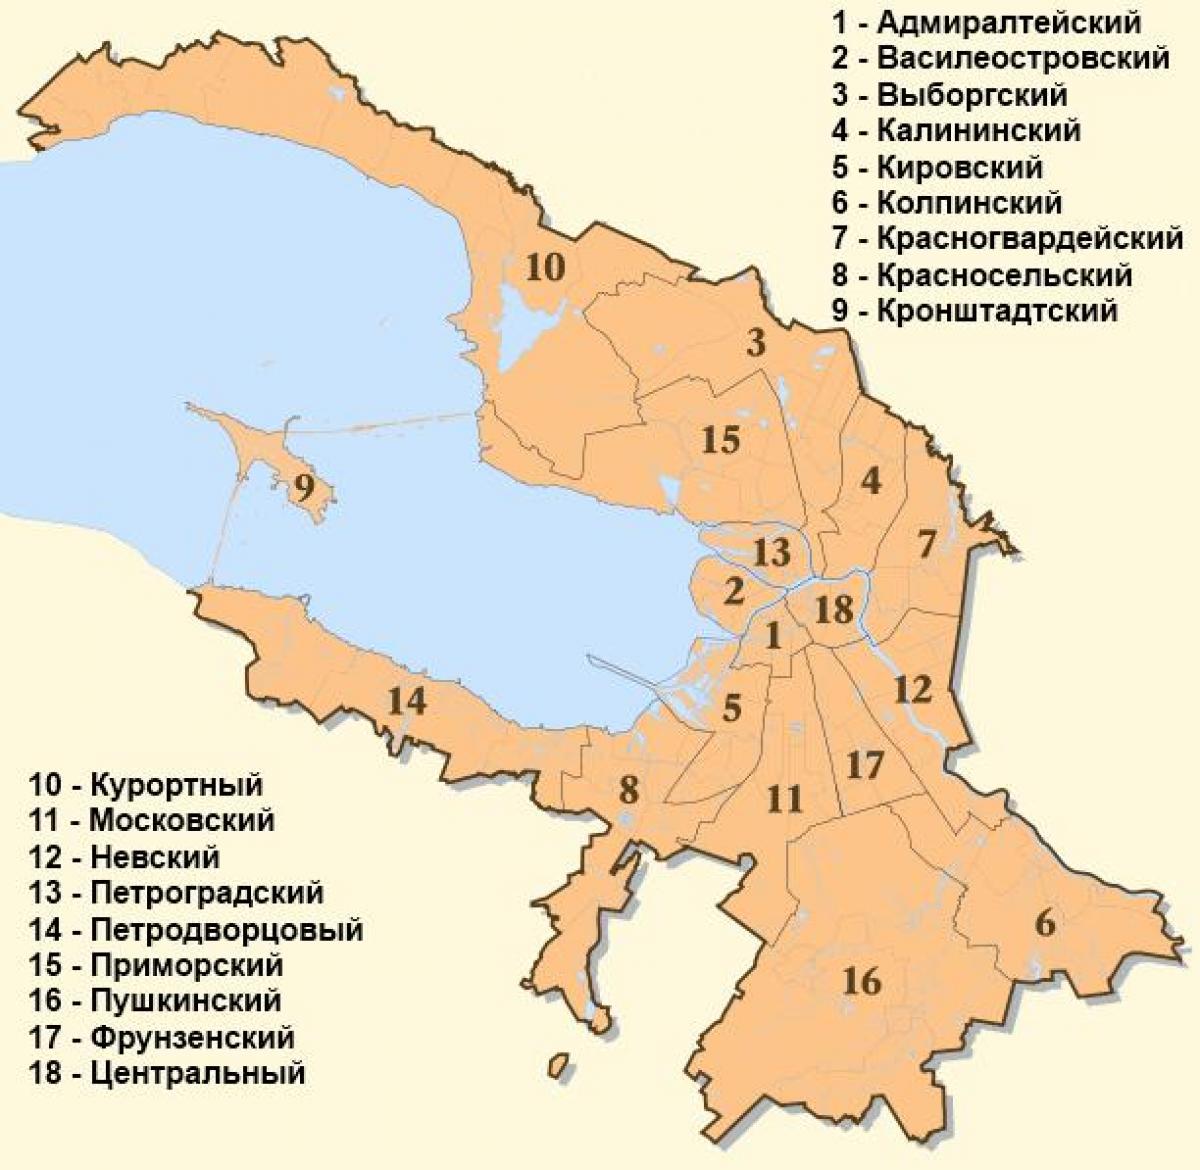 Mappa del quartiere di San Pietroburgo